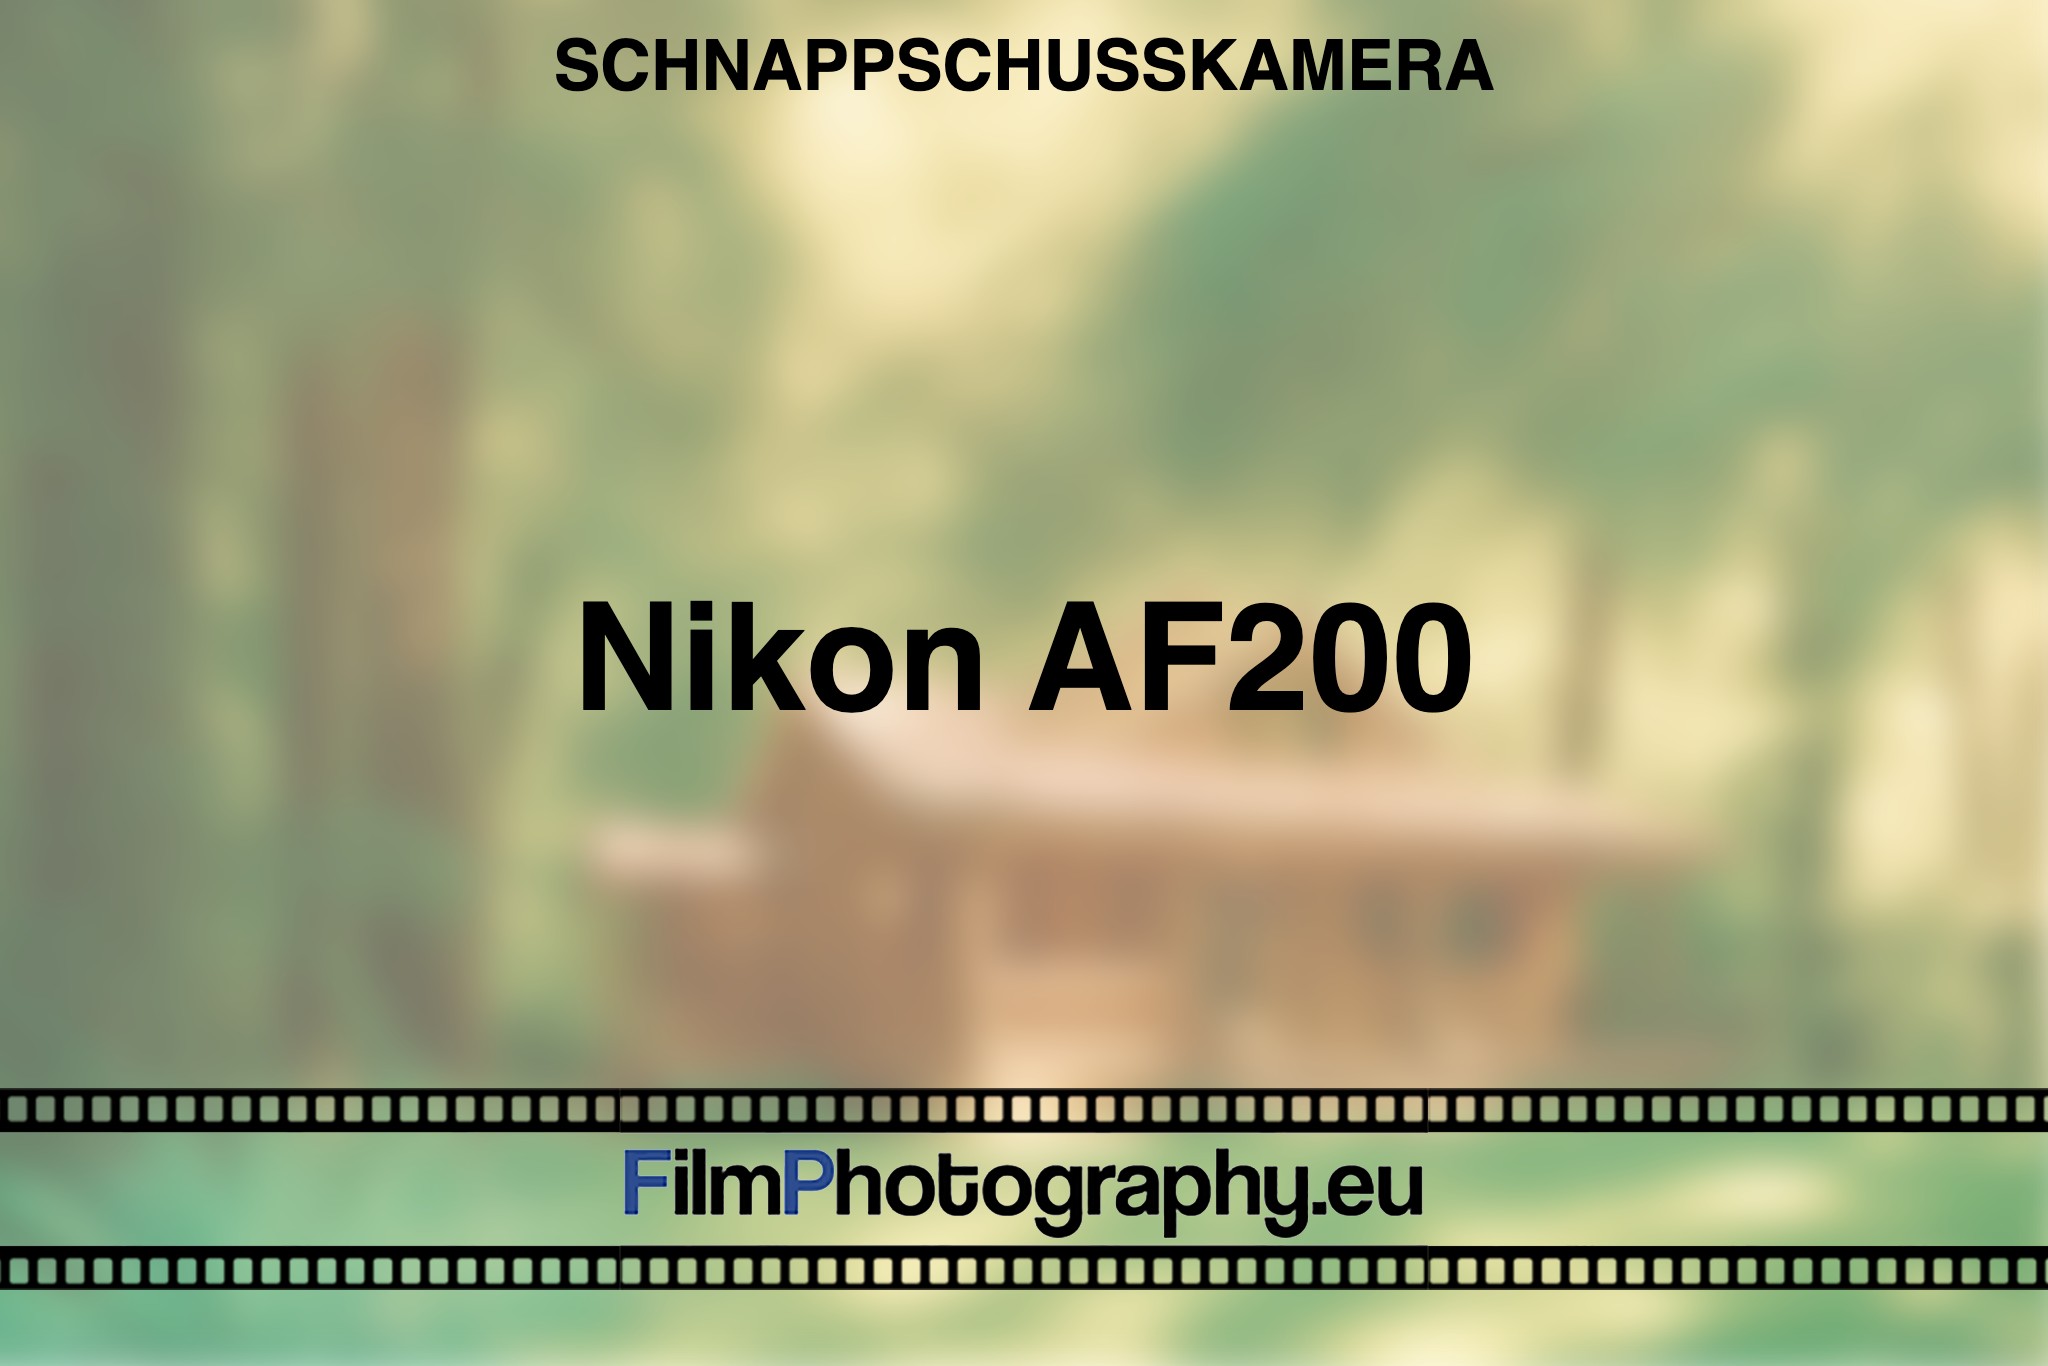 nikon-af200-schnappschusskamera-bnv